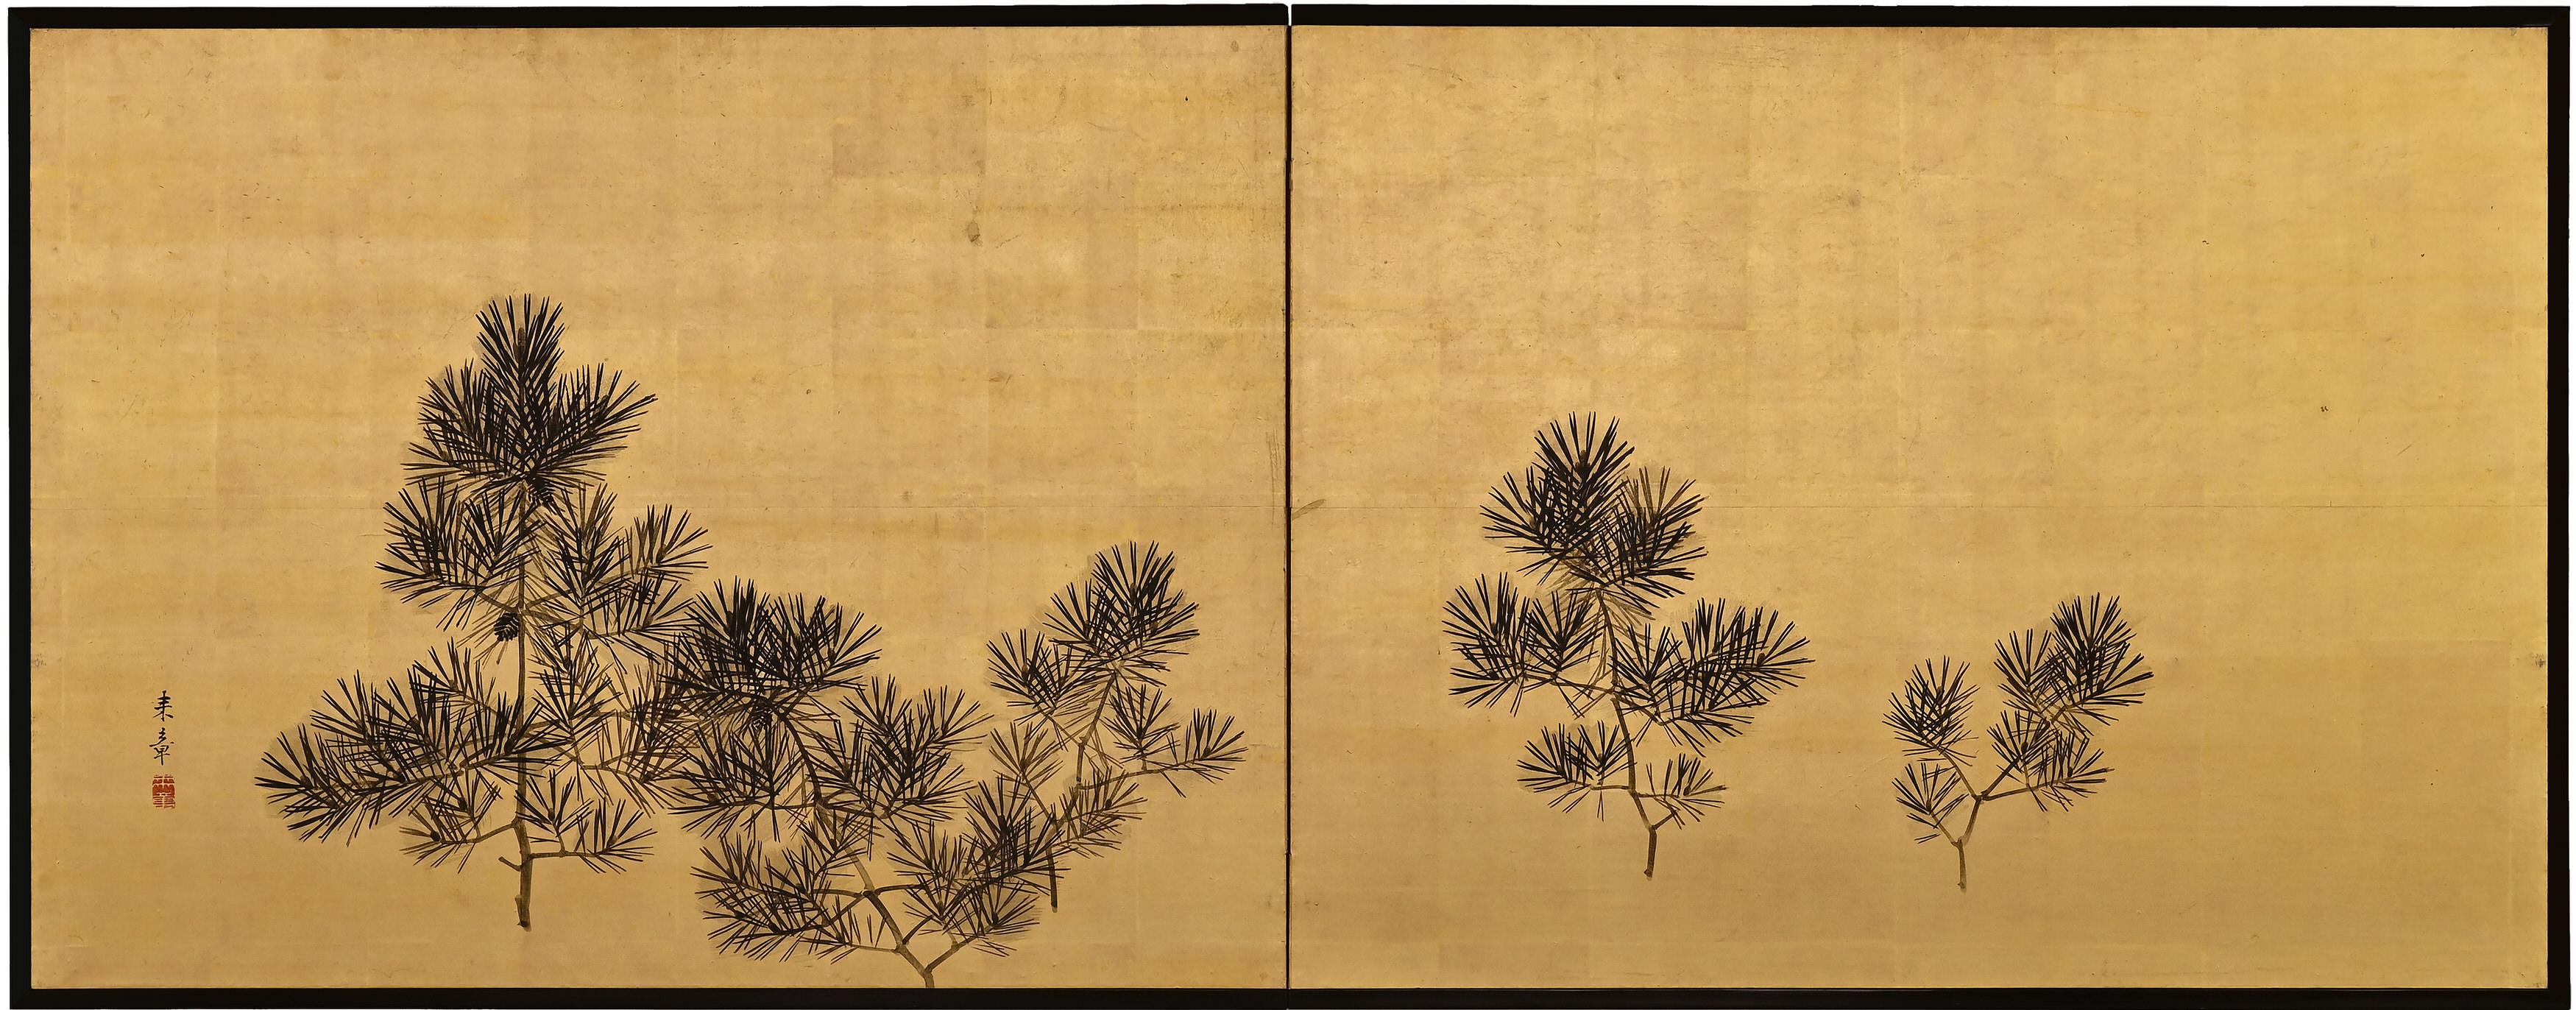 Drei Freunde des Winters

Nakajima Raisho (1796-1871)

Späte Edo-Periode, um 1850

Tusche und Blattgold auf Papier.

Dies ist ein doppelseitiger japanischer Furosaki oder Teezeremonie-Schirm aus der Mitte des 19. Jahrhunderts; Bambus und